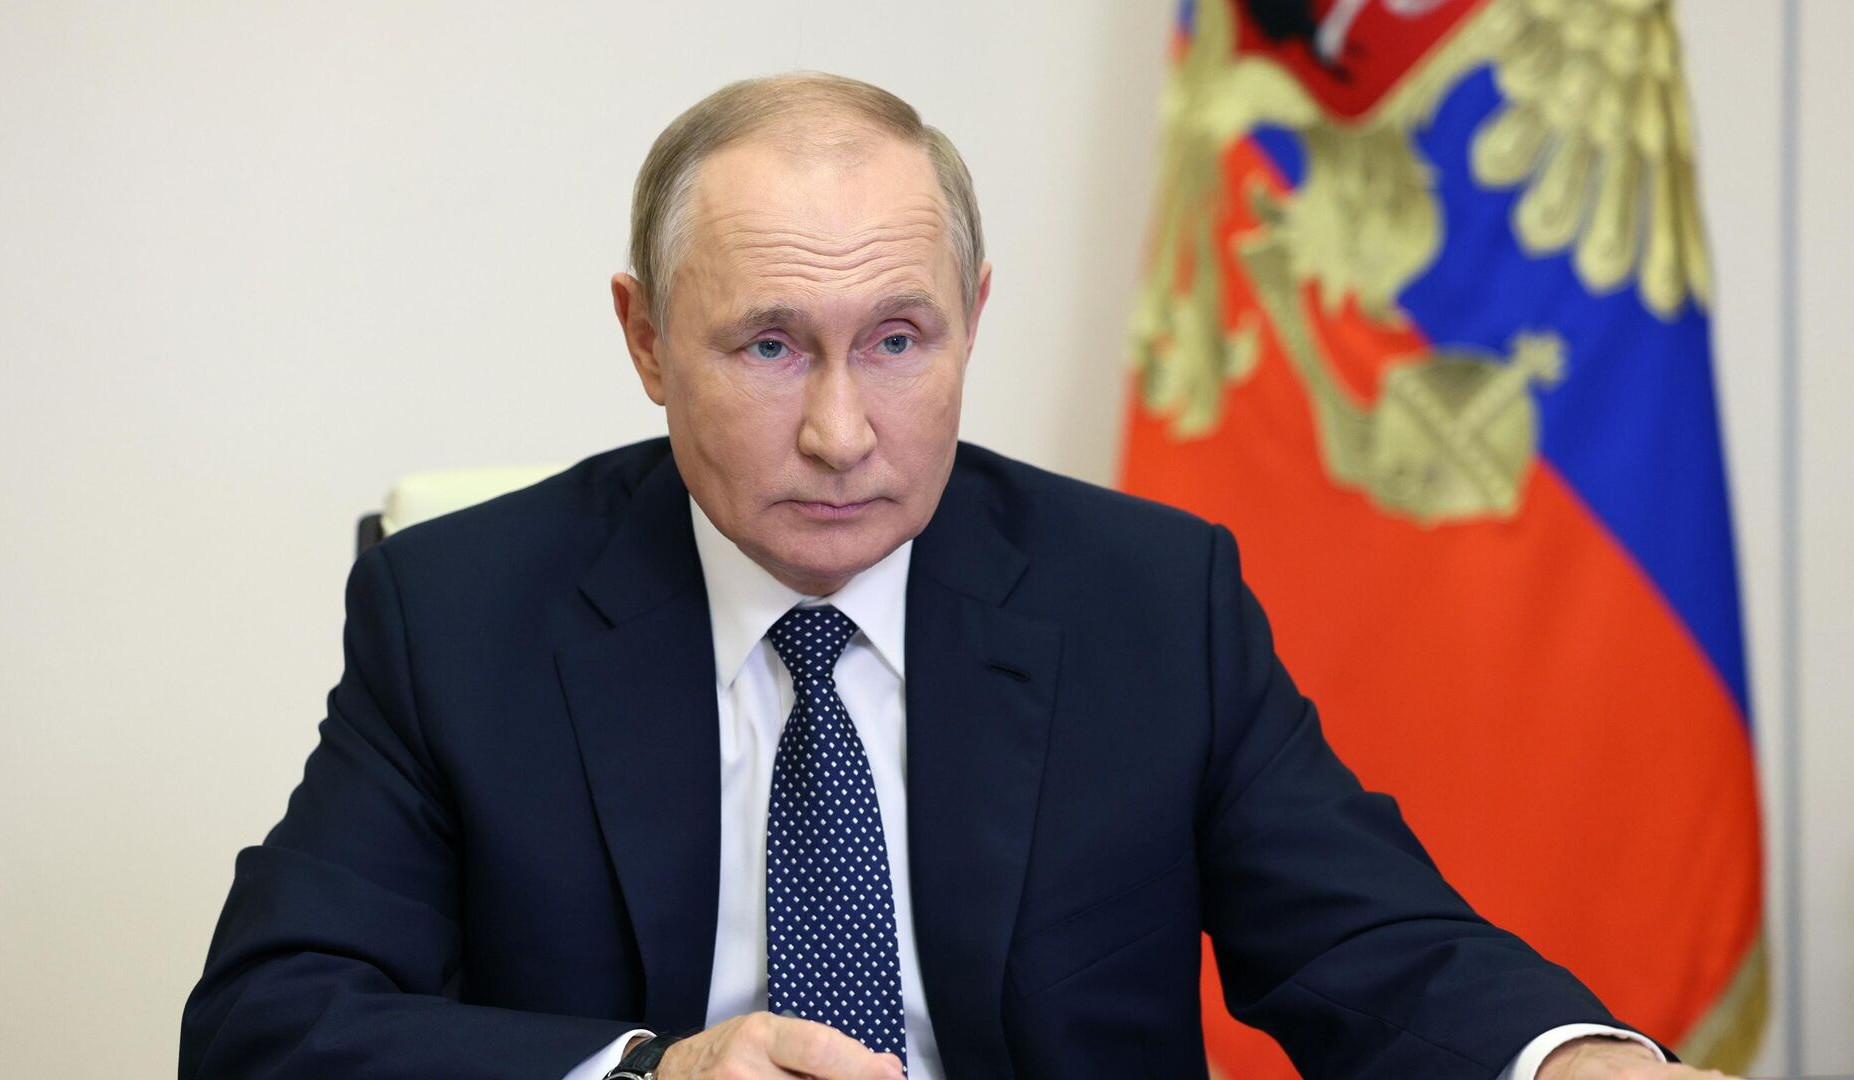 Удары, нанесенные по территории Украины, отчасти являются ответом на атаку на Черноморский флот: Путин